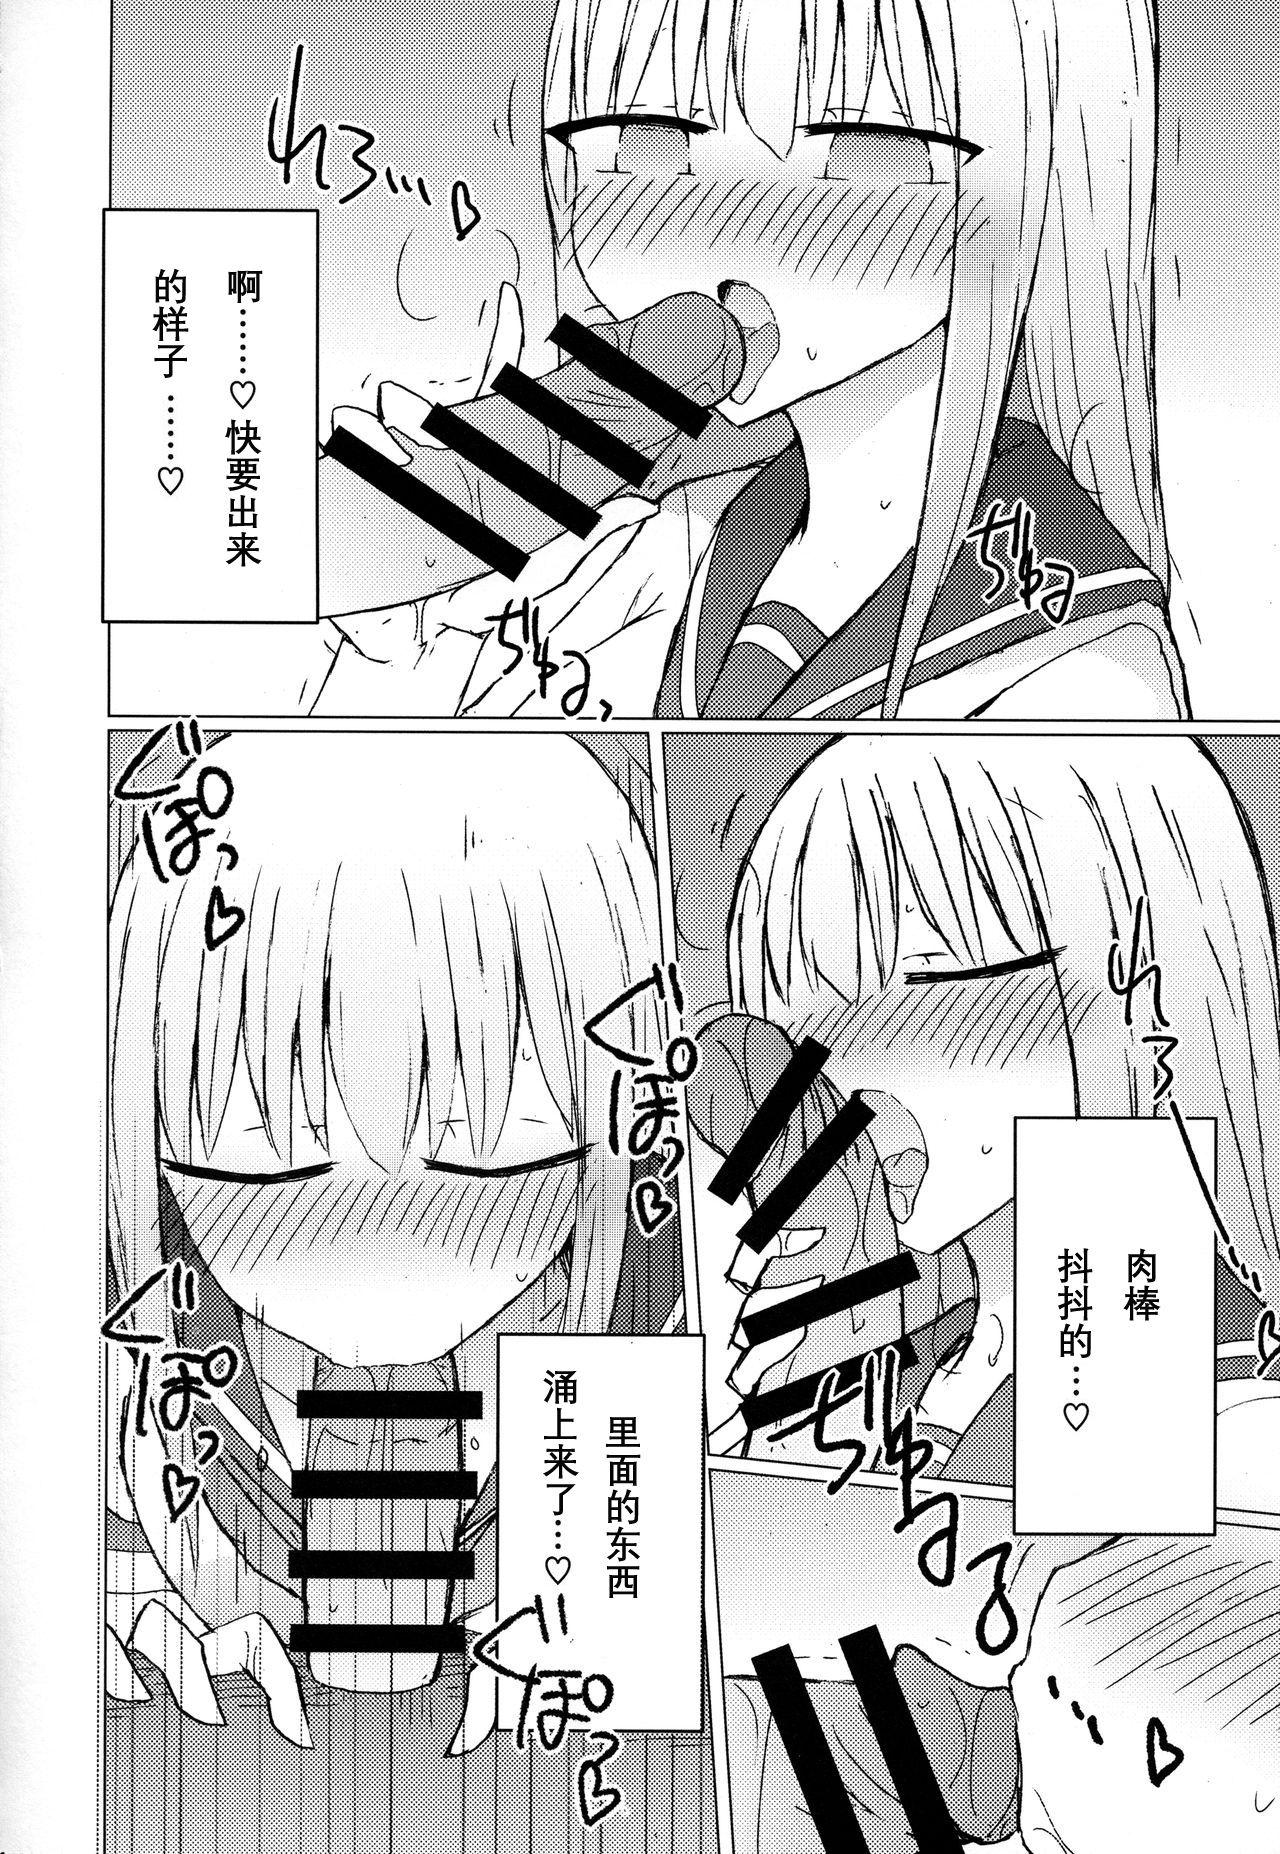 Cheerleader Atsui kara Jihanki de Juice o Kaou to Shitara Chinchin Igai Urikireteta. - Original Face - Page 9